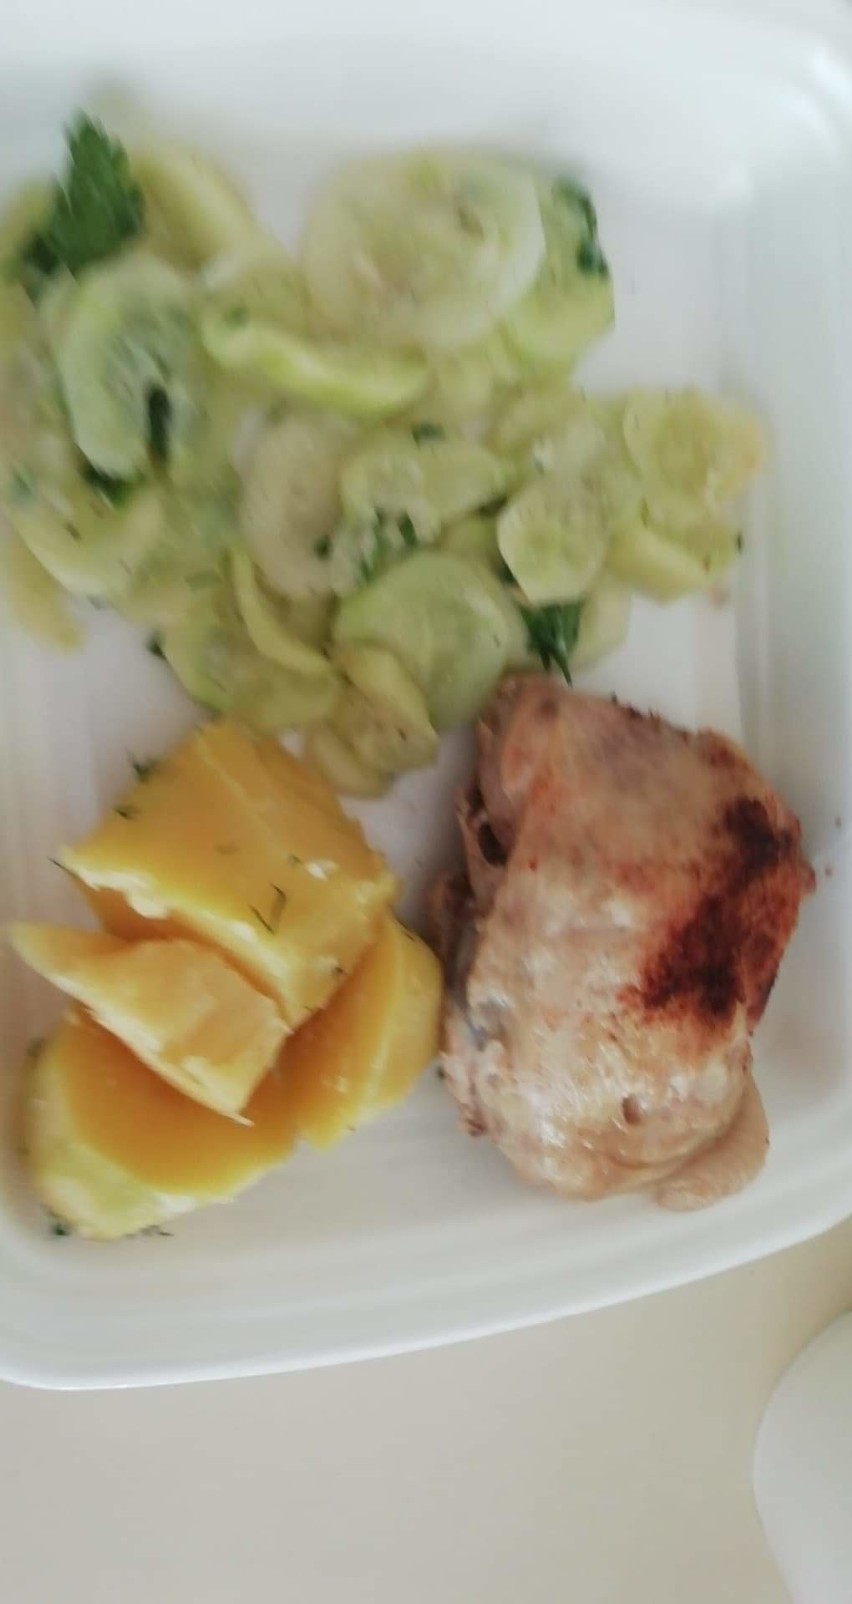 Tak wygląda jedzenie, które dostają pacjenci izolatorium oddziału zakaźnego w szpitalu w Jarosławiu [ZDJĘCIA]